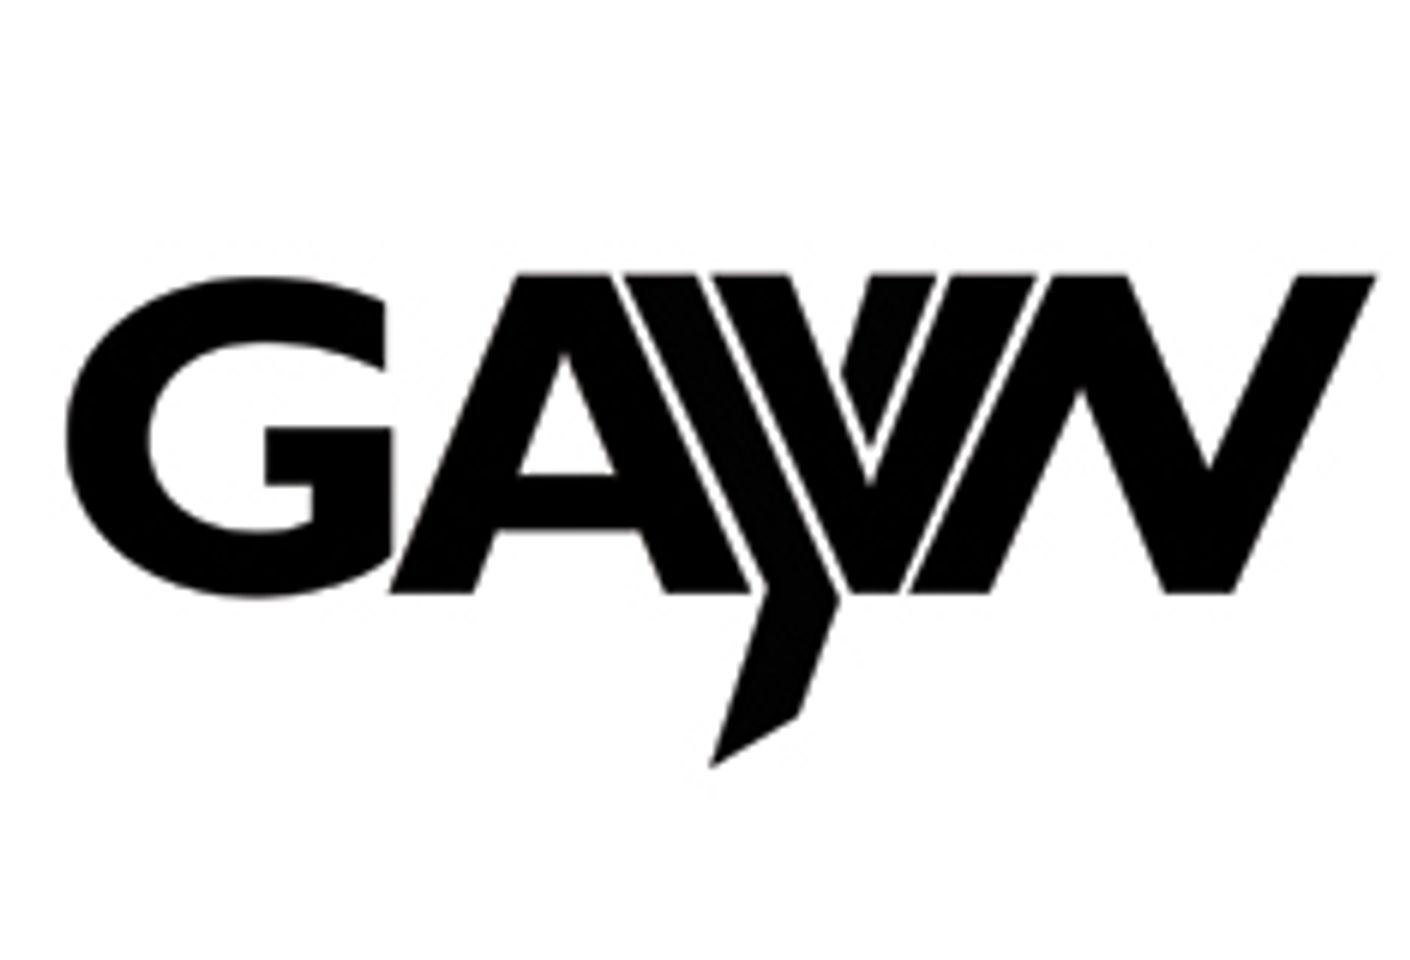 GAYVN Announces Host Hotel